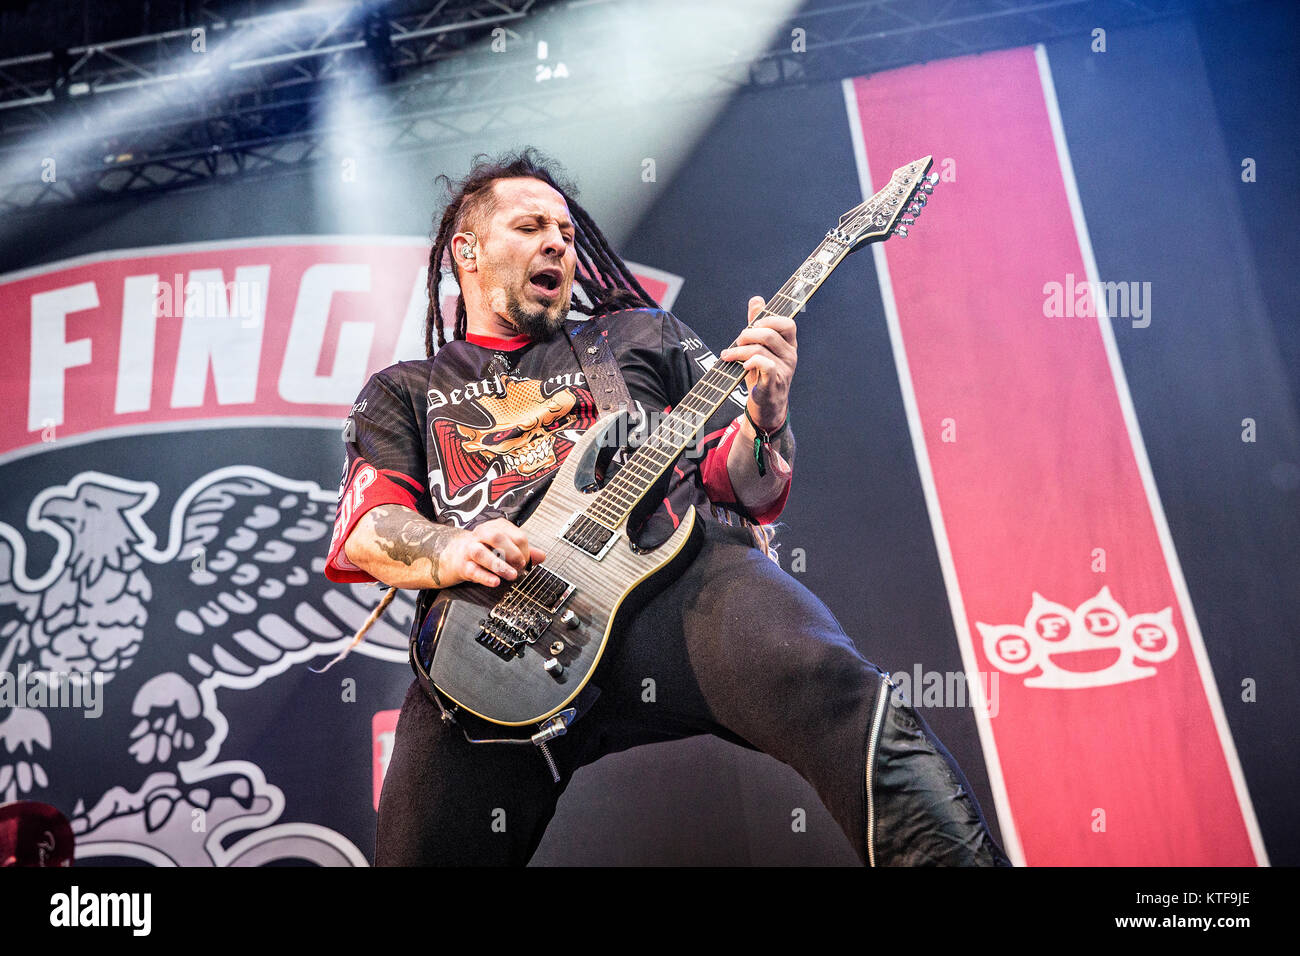 Norwegen, Halden - Juni 24., 2017. Five Finger Death Punch, die Amerikanische heavy Band, führt ein Live Konzert während der norwegischen Musik Festival Tonnen Gestein 2017. Hier Gitarrist Zoltan Bathory wird gesehen, live auf der Bühne. Stockfoto